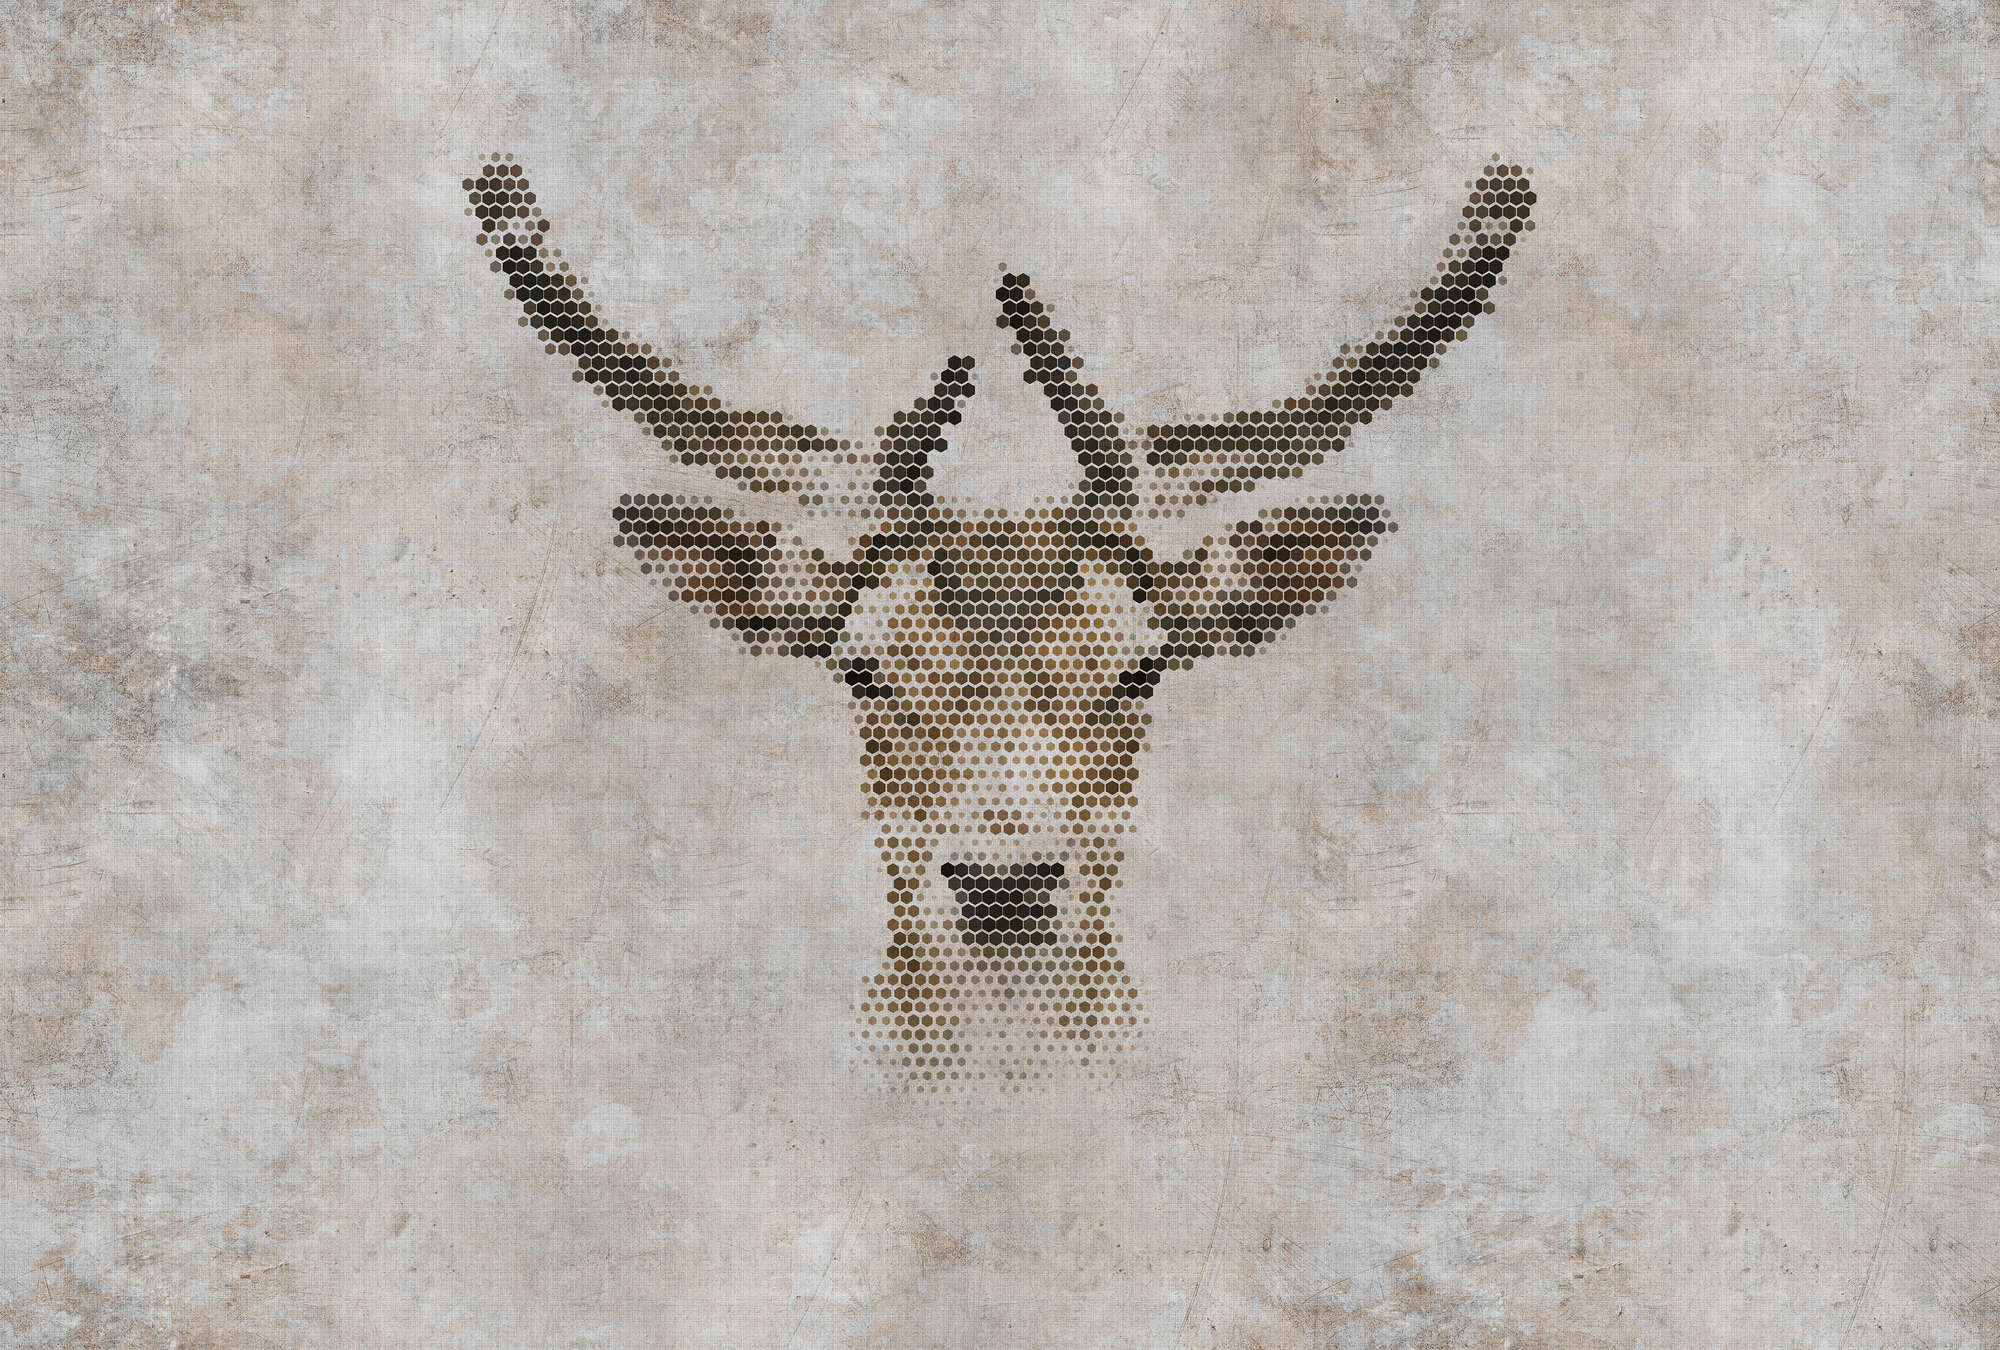             Big three 3 - papel pintado con impresión digital, aspecto concreto con ciervos en estructura de lino natural - beige, marrón | vellón liso mate
        